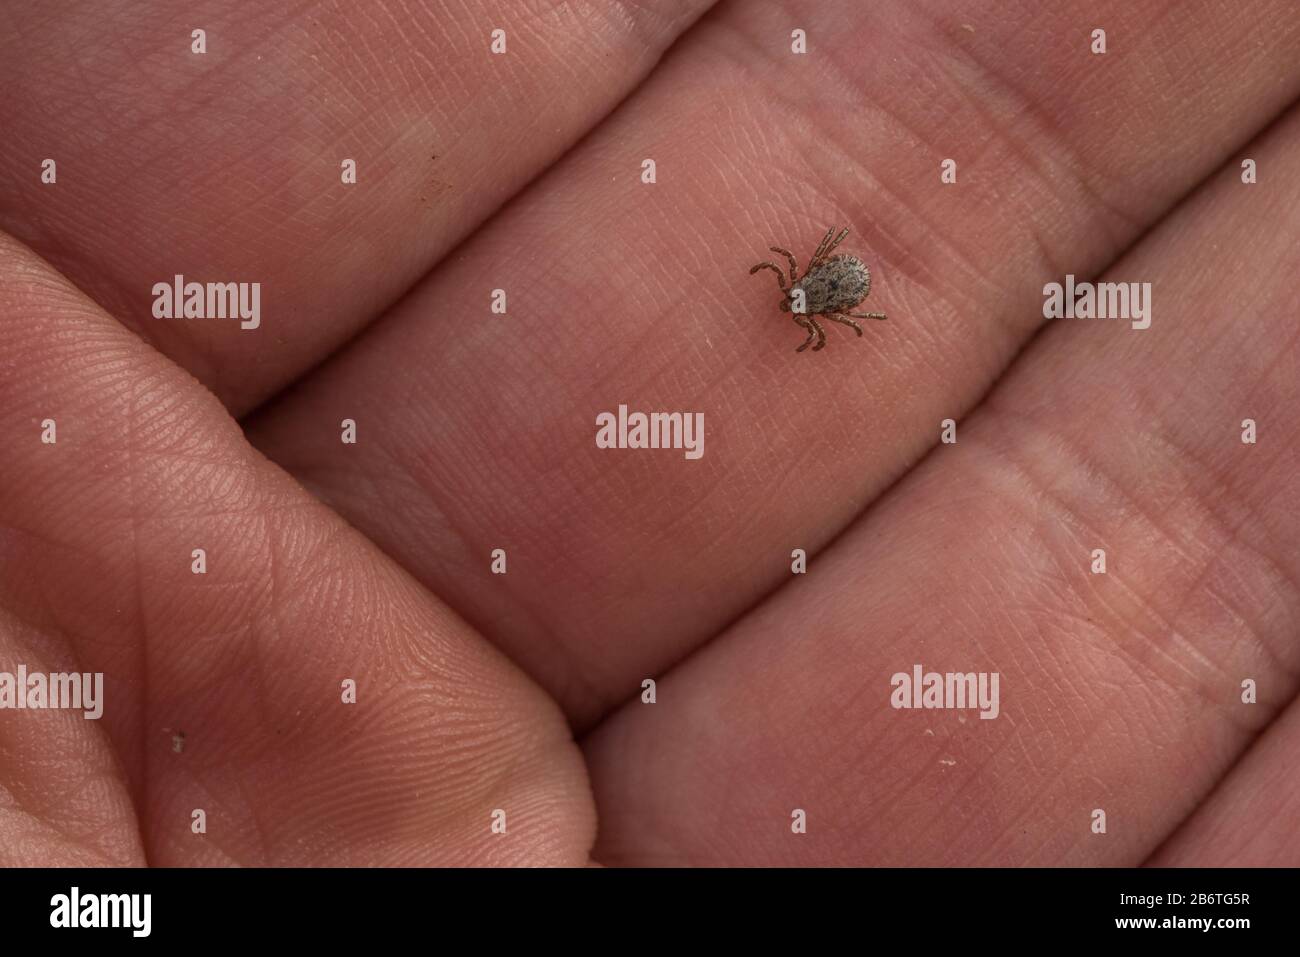 Eine winzige Zecke (Dermacentor occidentalis), ein Krankheitsvektor krabbelt in Berkeley, Kalifornien, auf der Hand der Fotografen. Stockfoto